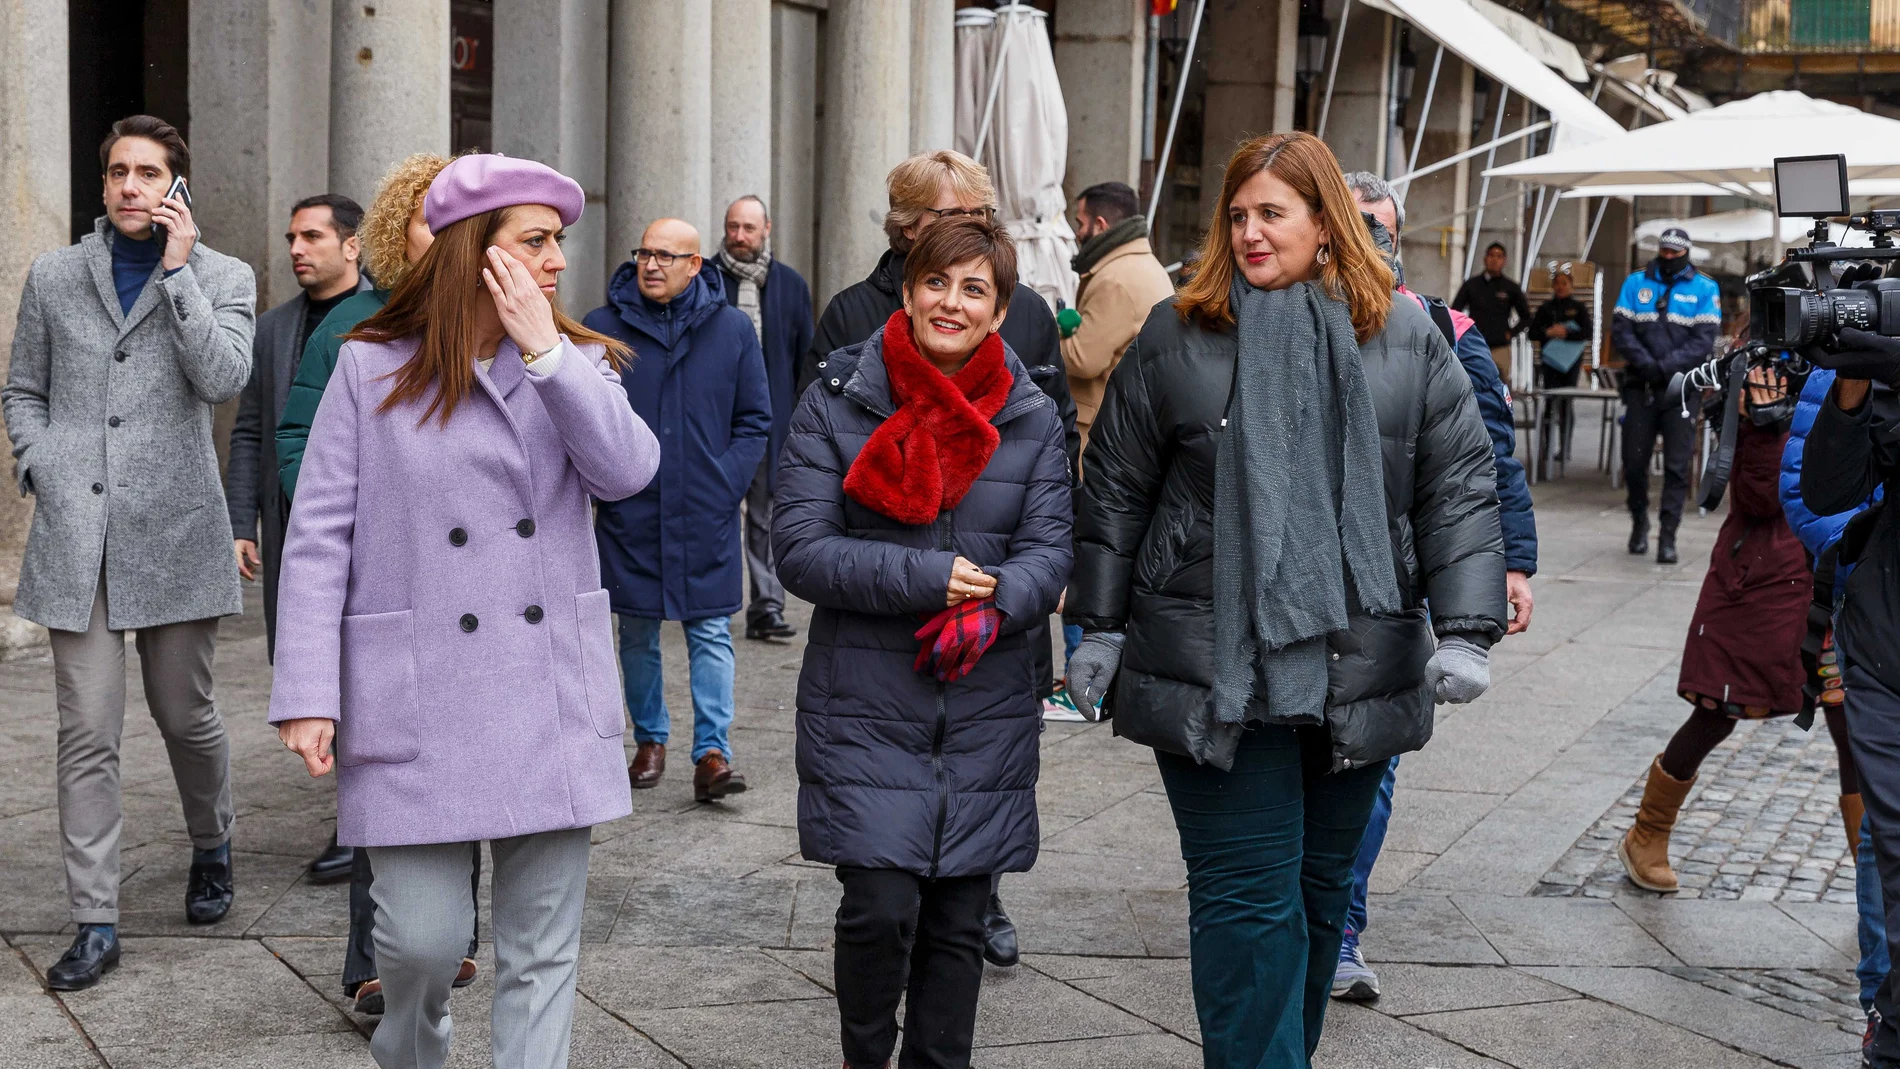 La ministra Isabel Rodríguez pasea por las calles de Segovia junto a la delegada del Gobierno en Castilla y León, Virginia Barcones, y la alcaldesa de Segovia, Clara Martín